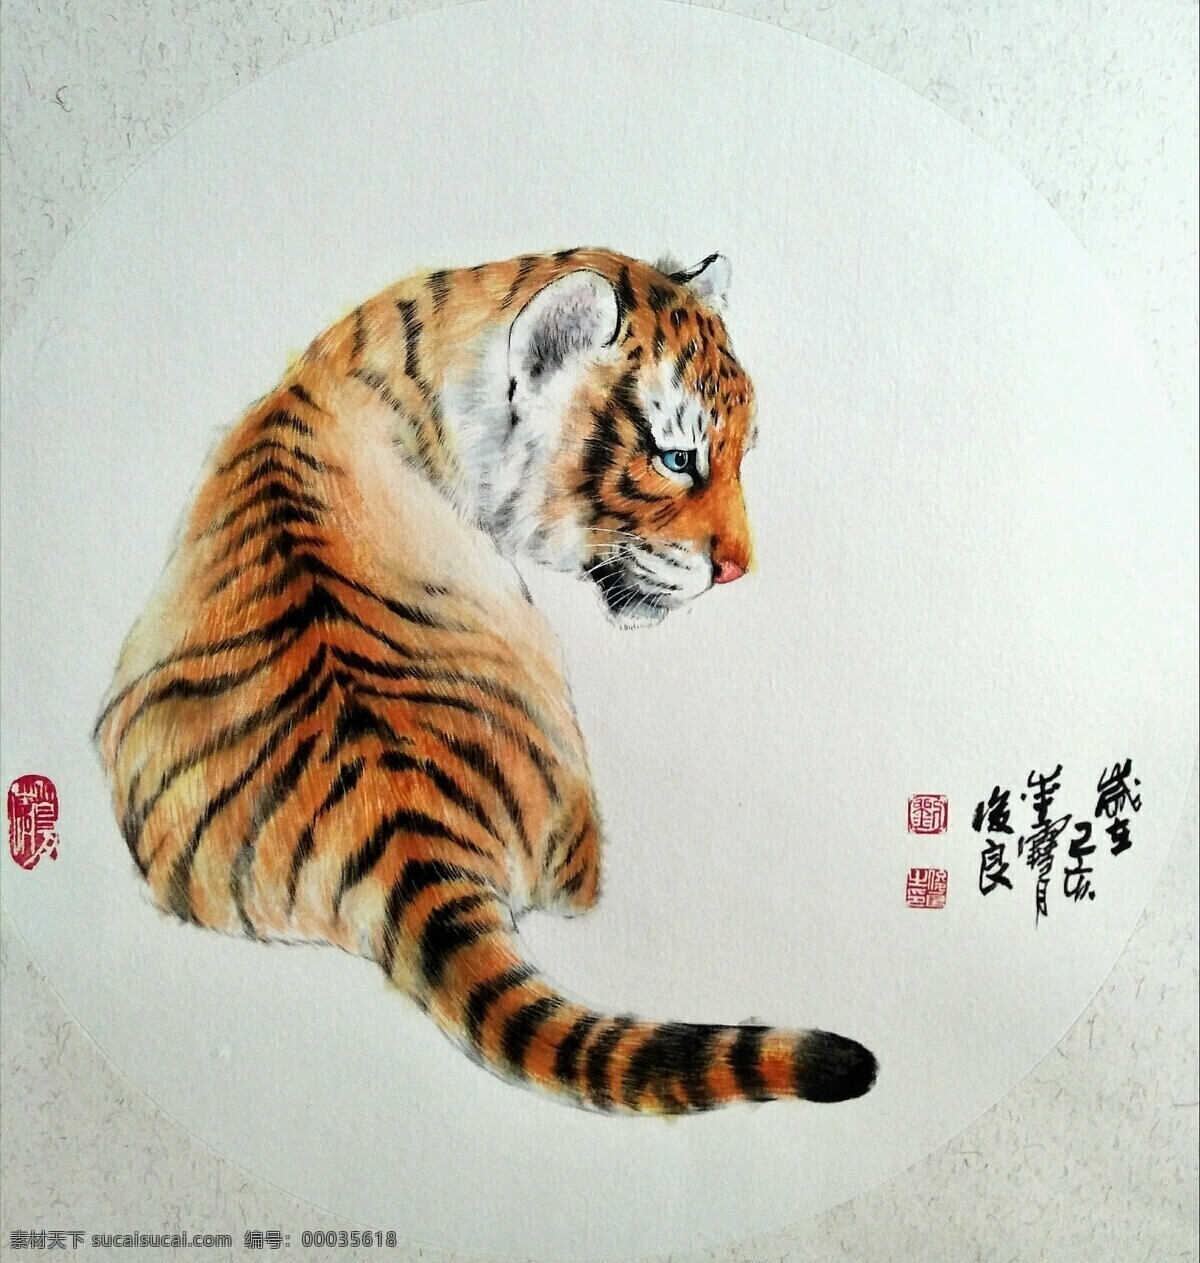 画家 刘 俊良 国画作品 老虎 刘俊良 国画 作品 文化艺术 绘画书法